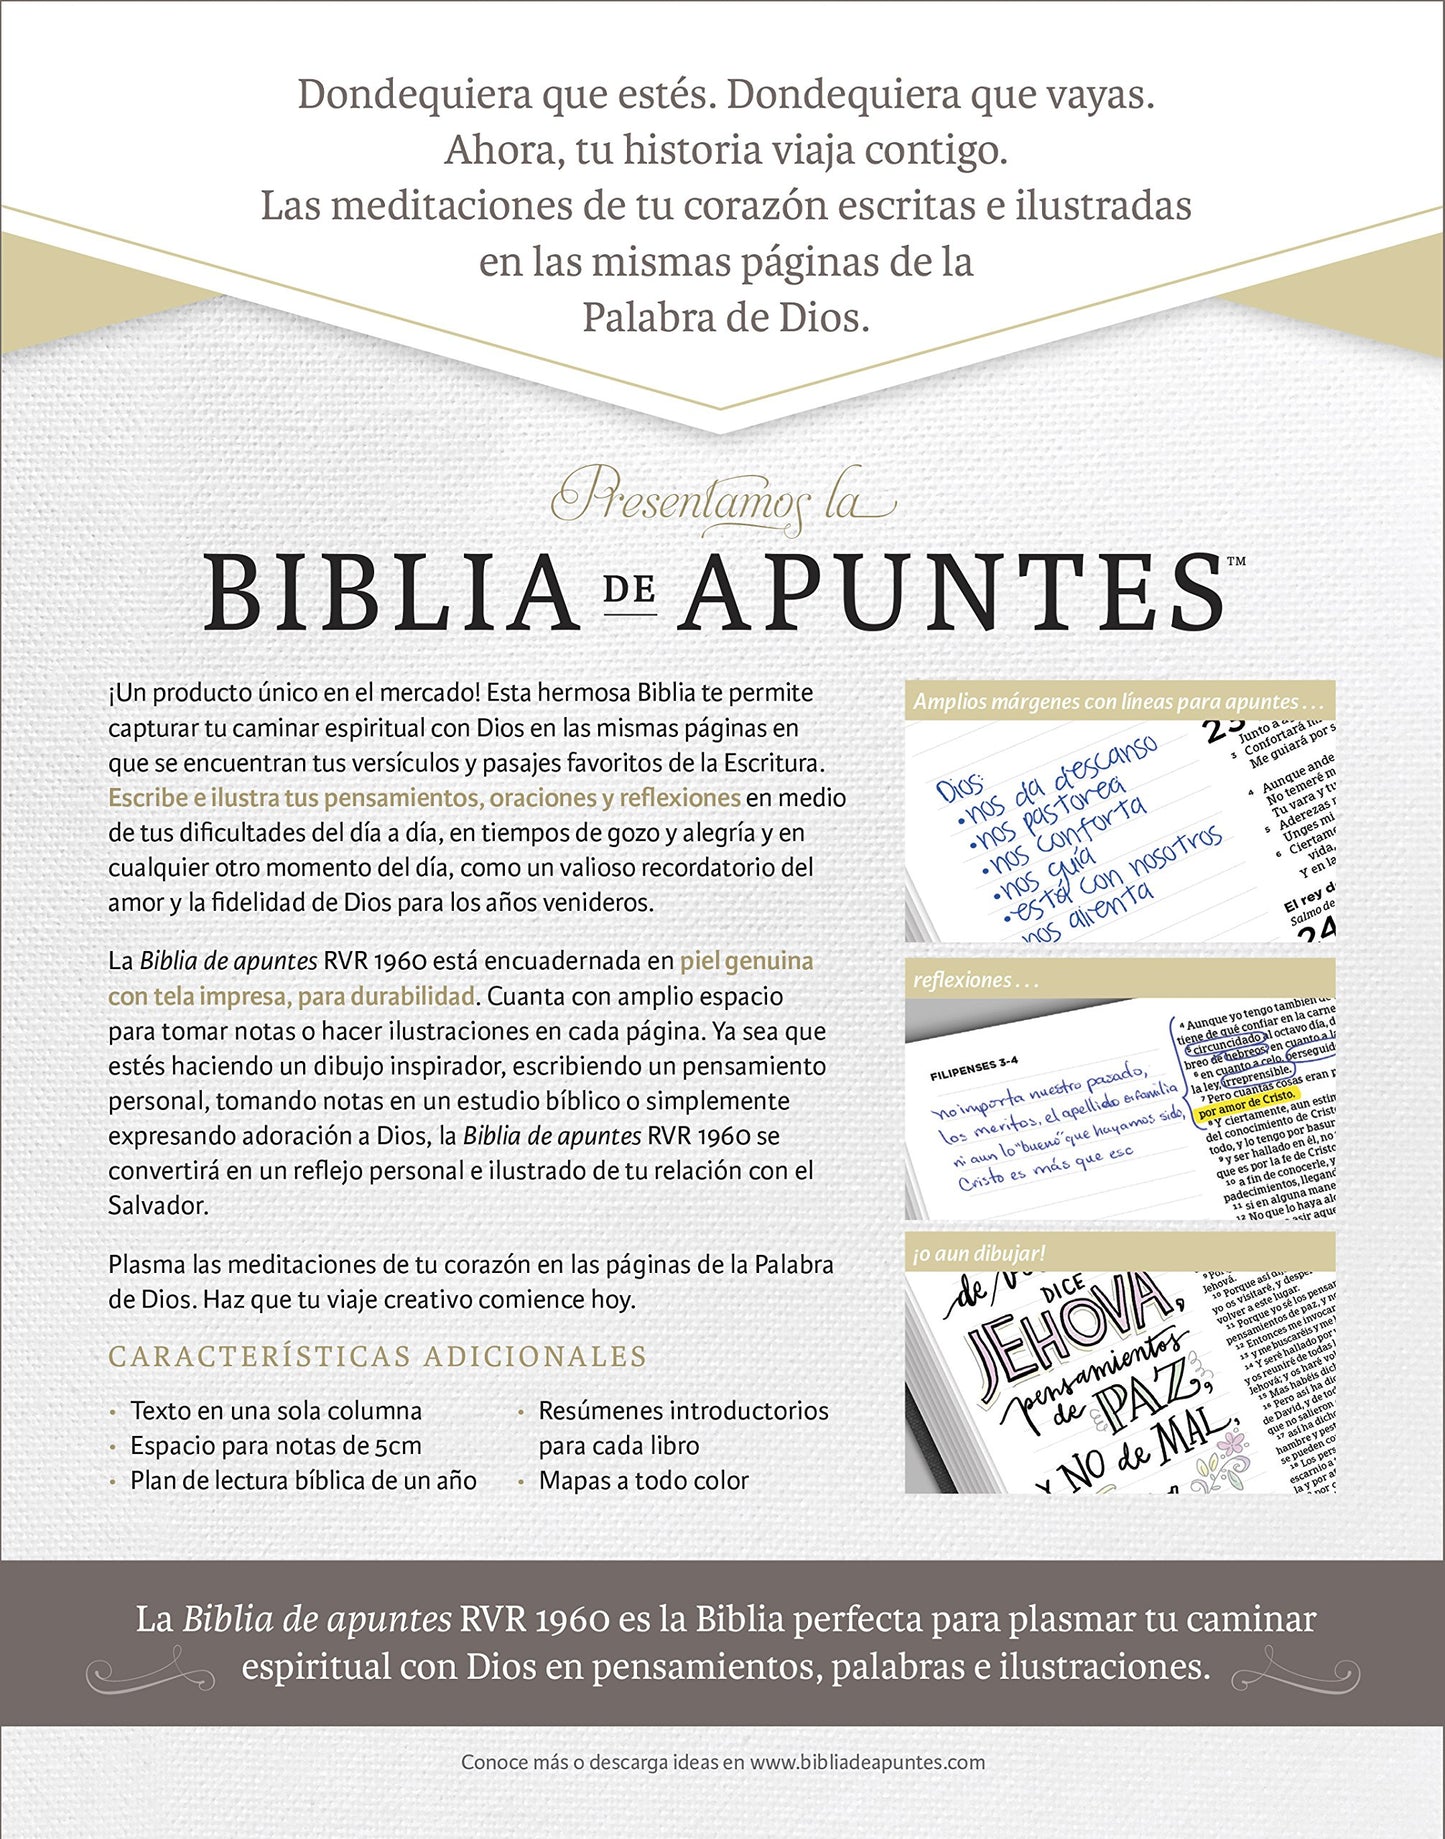 RVR 1960 Biblia de apuntes - Gris - Piel genuina y tela impresa (Spanish Edition)